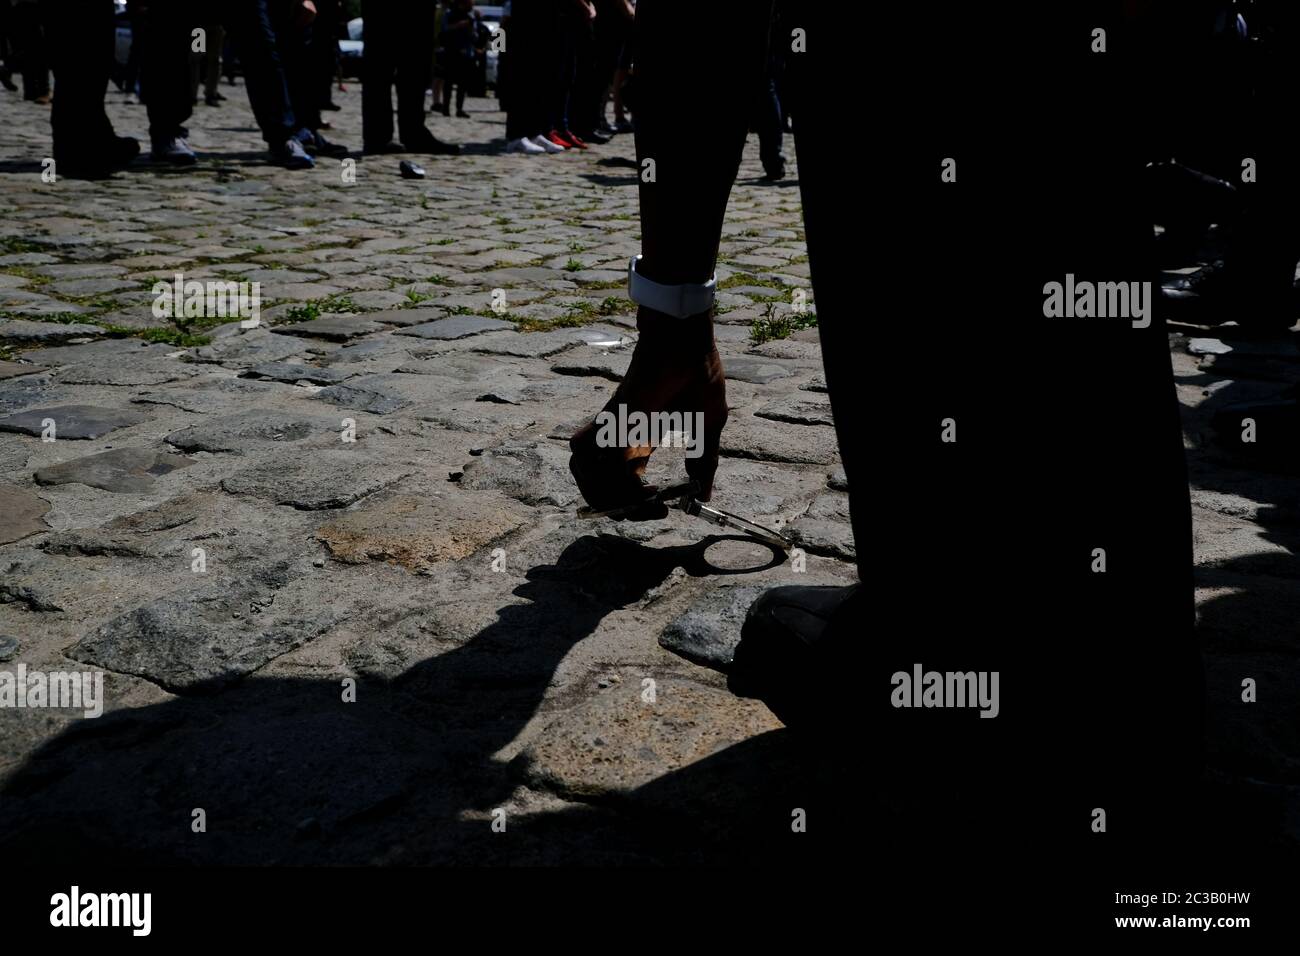 Bruxelles, Belgique. 19 juin 2020. Les menottes laissées sur le terrain par les policiers sont photographiées lors d'une manifestation de violence contre la police et d'un sentiment anti-policier perçu dans les médias. Crédit: ALEXANDROS MICHAILIDIS/Alay Live News Banque D'Images